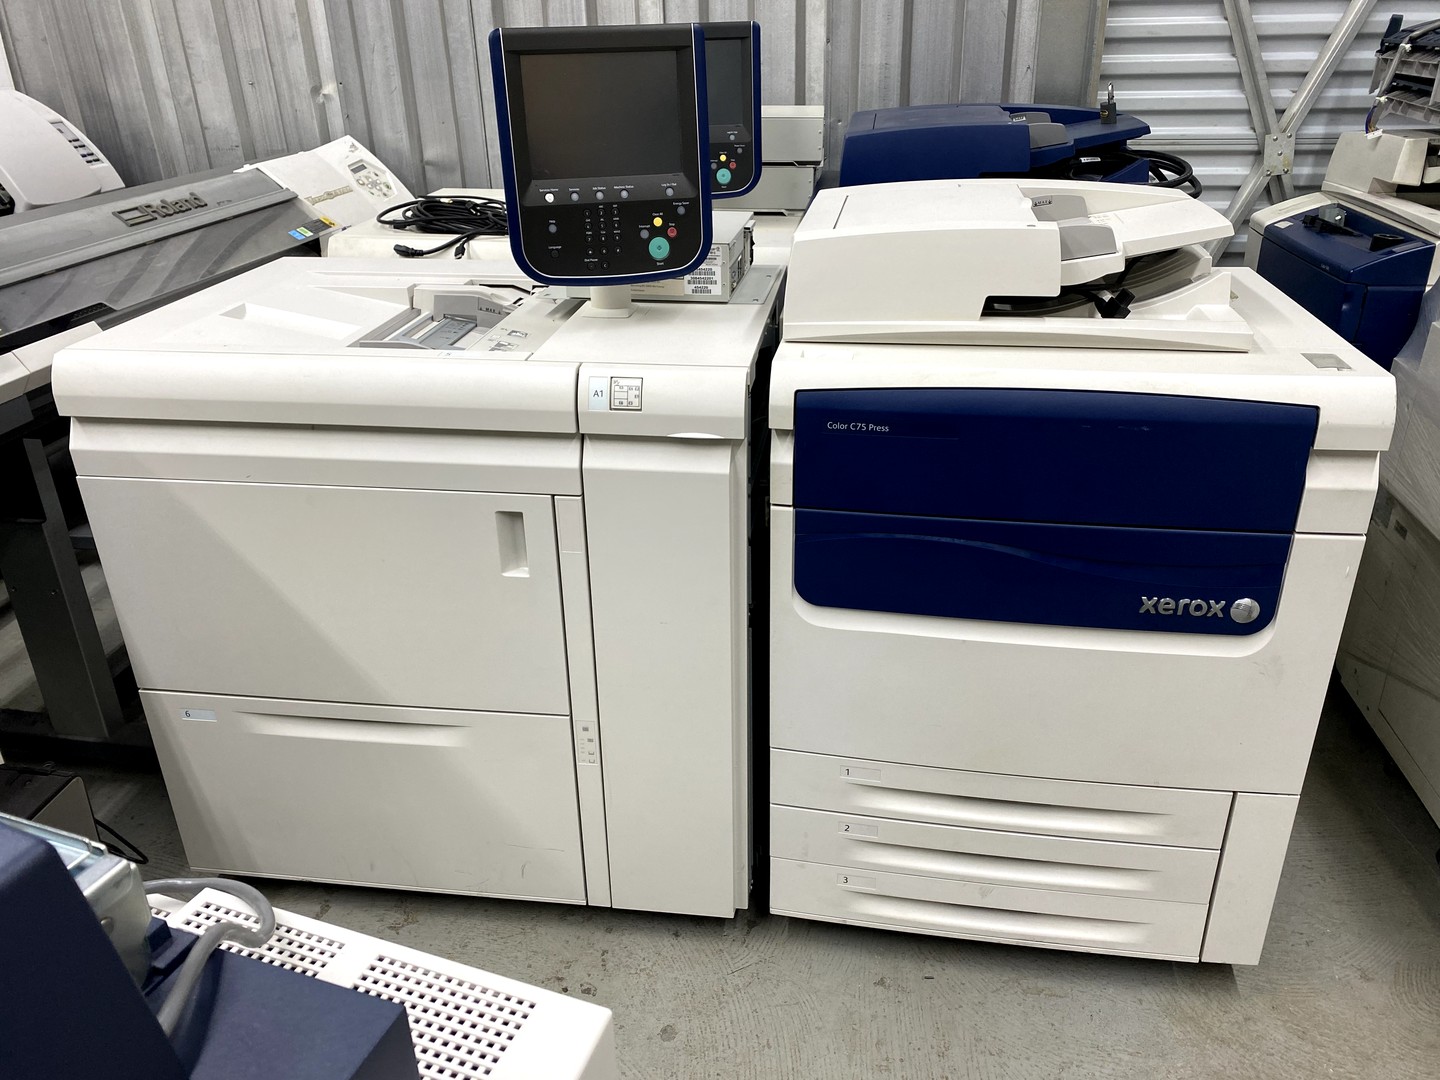 impresoras y scanners - copiadora color xerox C75press